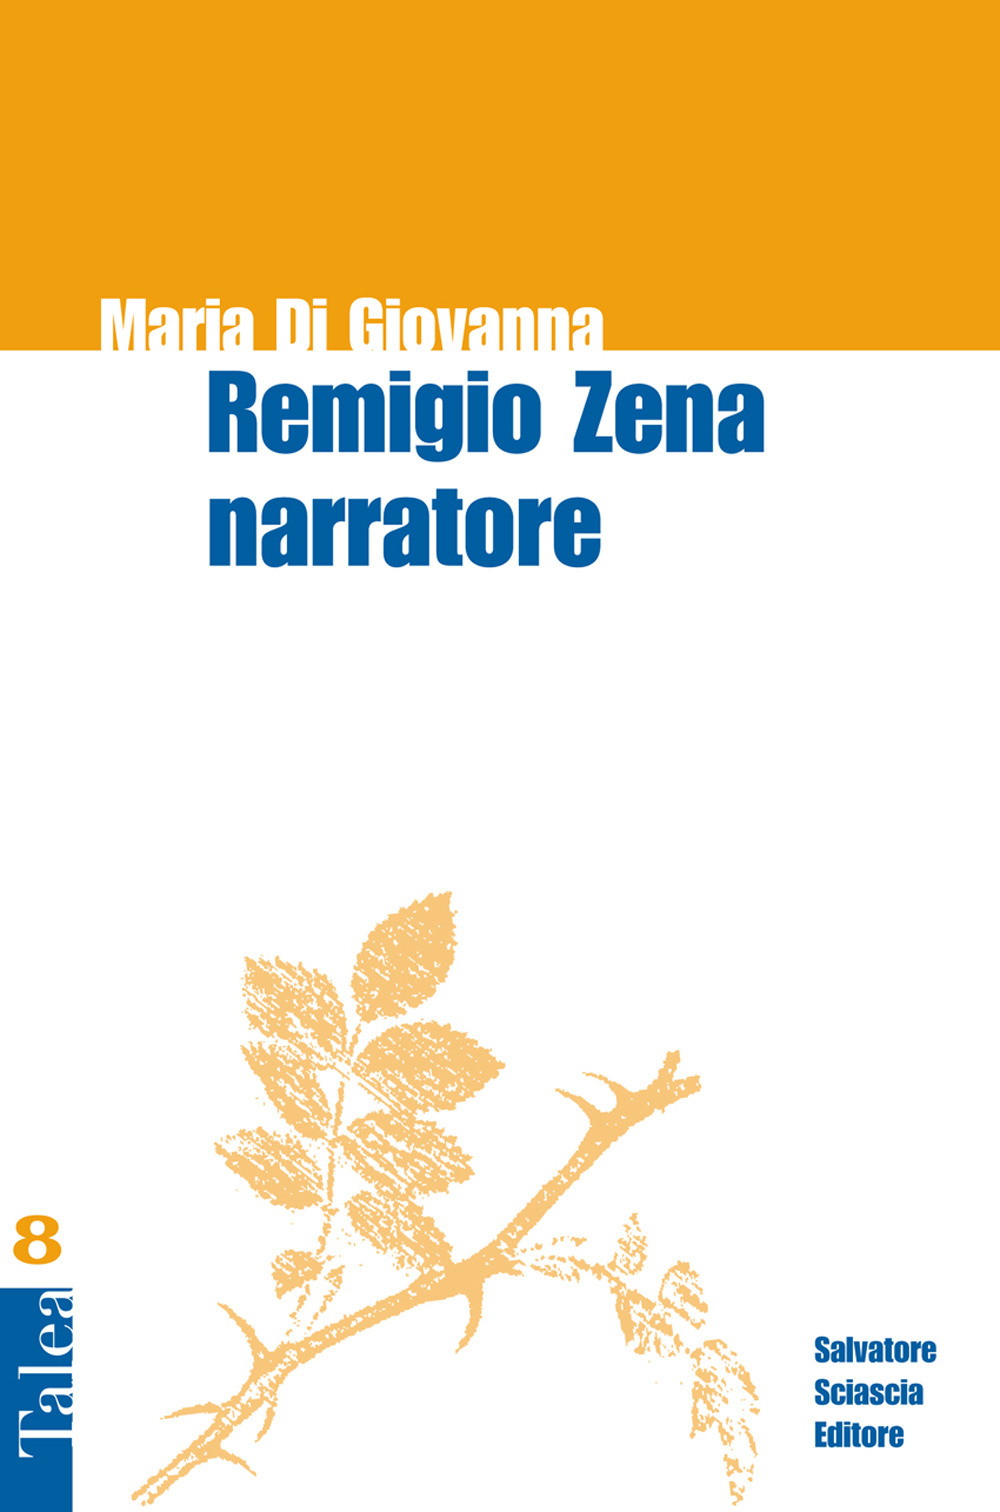 Libri Di Giovanna Maria - Remigio Zena Narratore NUOVO SIGILLATO, EDIZIONE DEL 16/02/2018 SUBITO DISPONIBILE